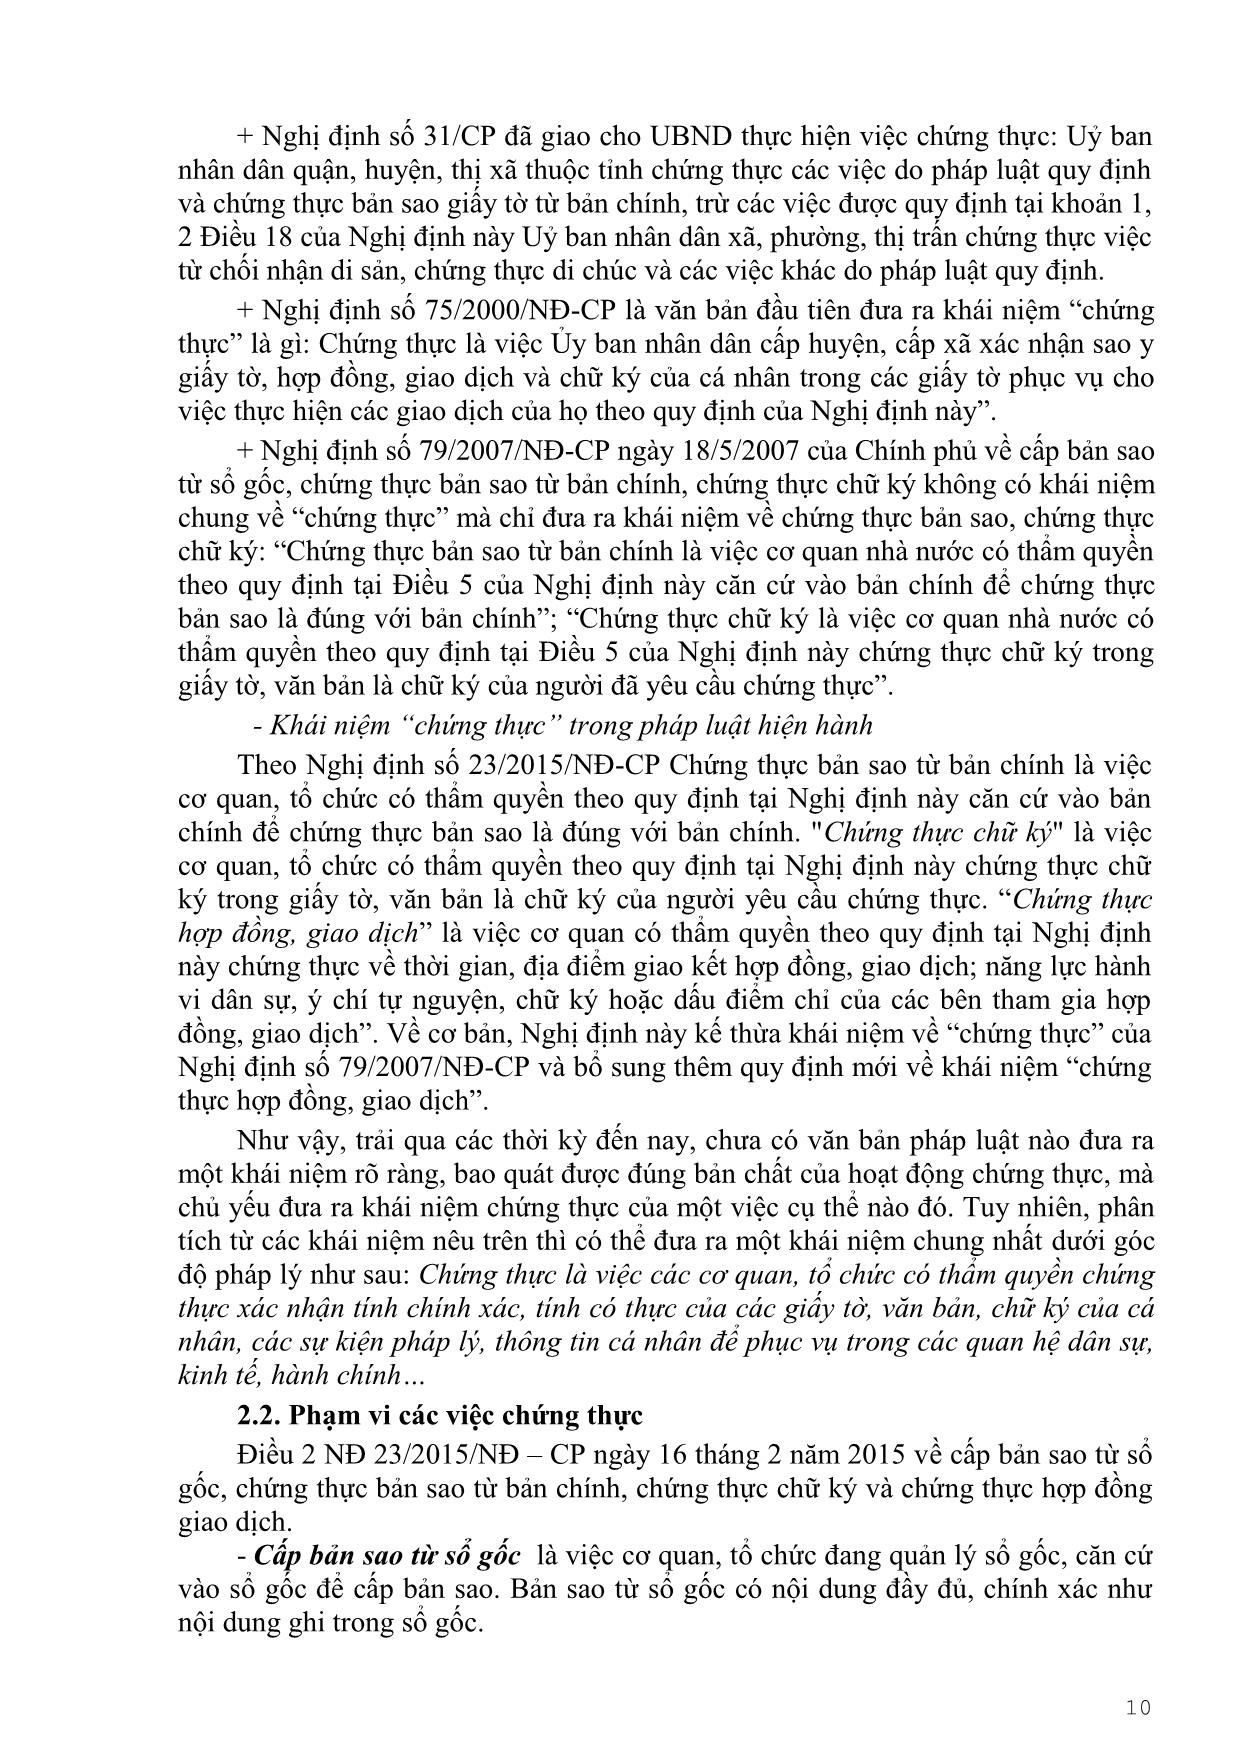 Giáo trình Soạn thảo văn bản trang 9